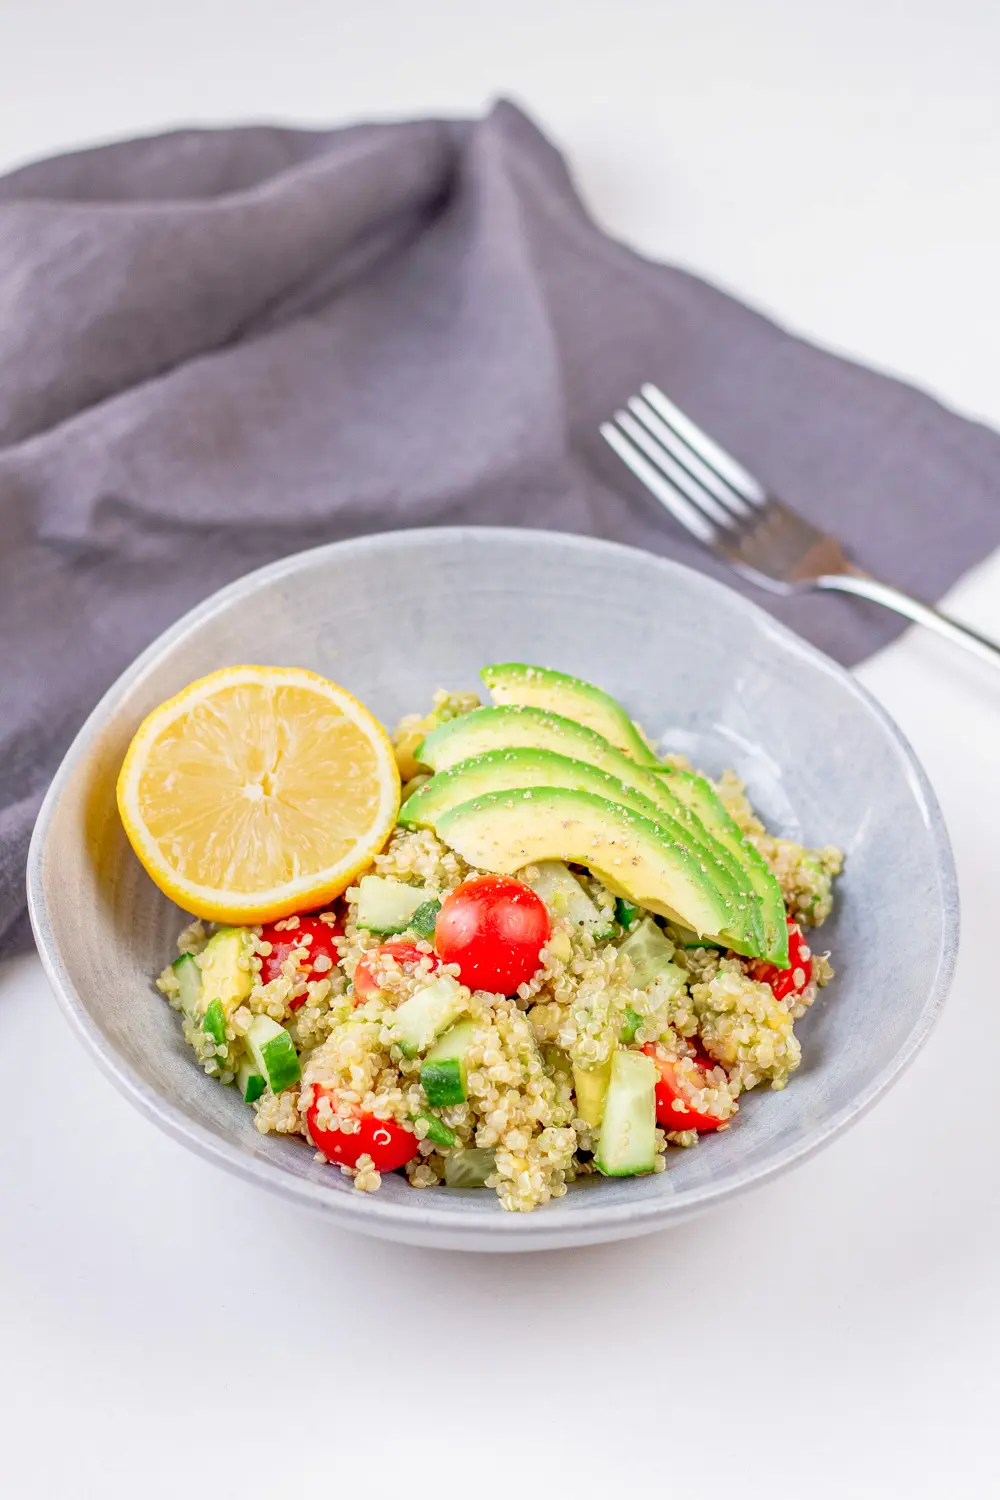 Dieser Quinoa Salat ist einfach und schnell gemacht. Durch die Avocado wird der Salat schön cremig und ist zudem vegan. Ein gesundes und leckeres Rezept.